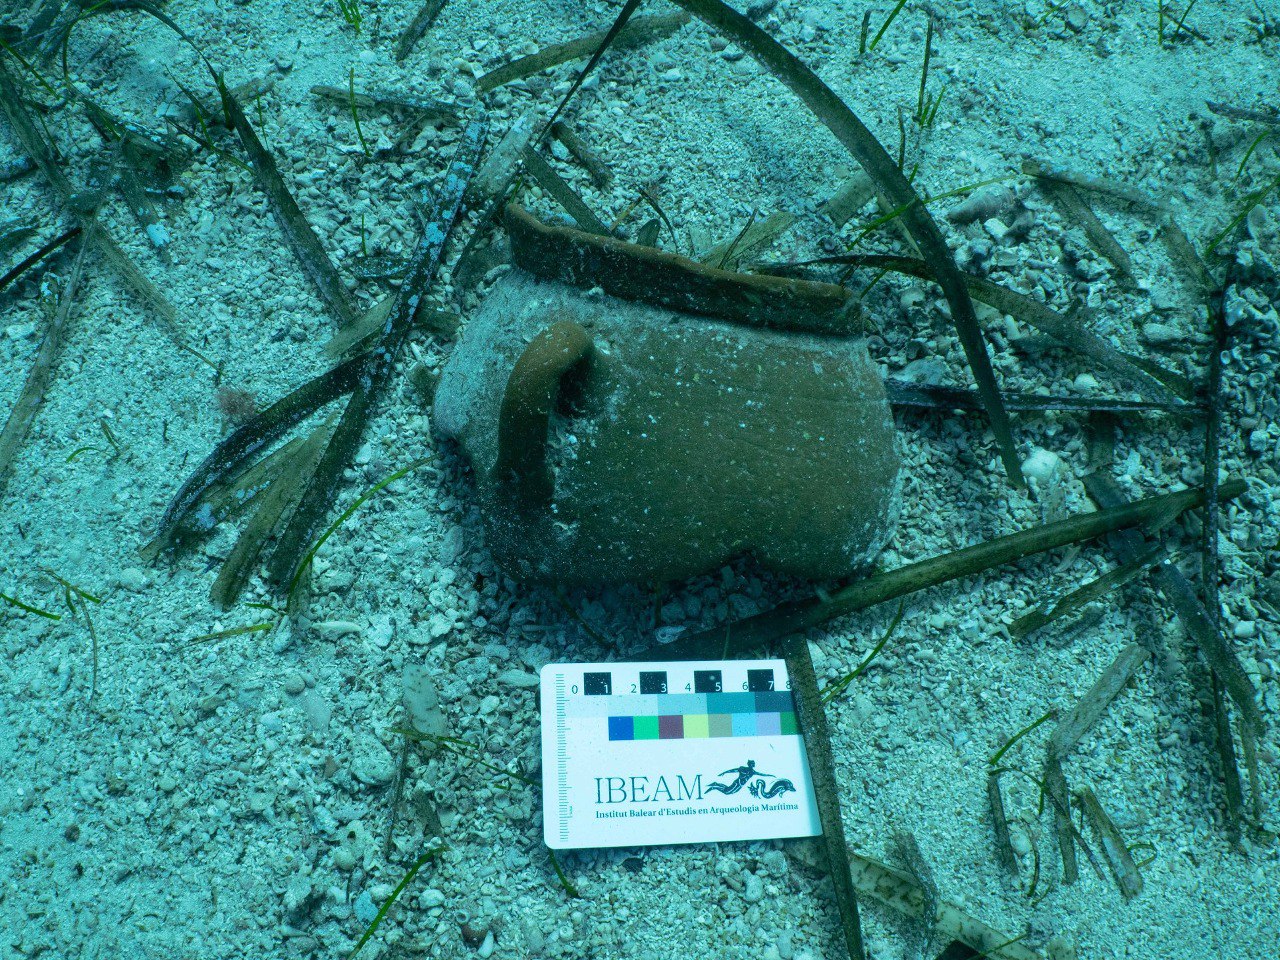 Pieza de un yacimiento arqueológico subacuático